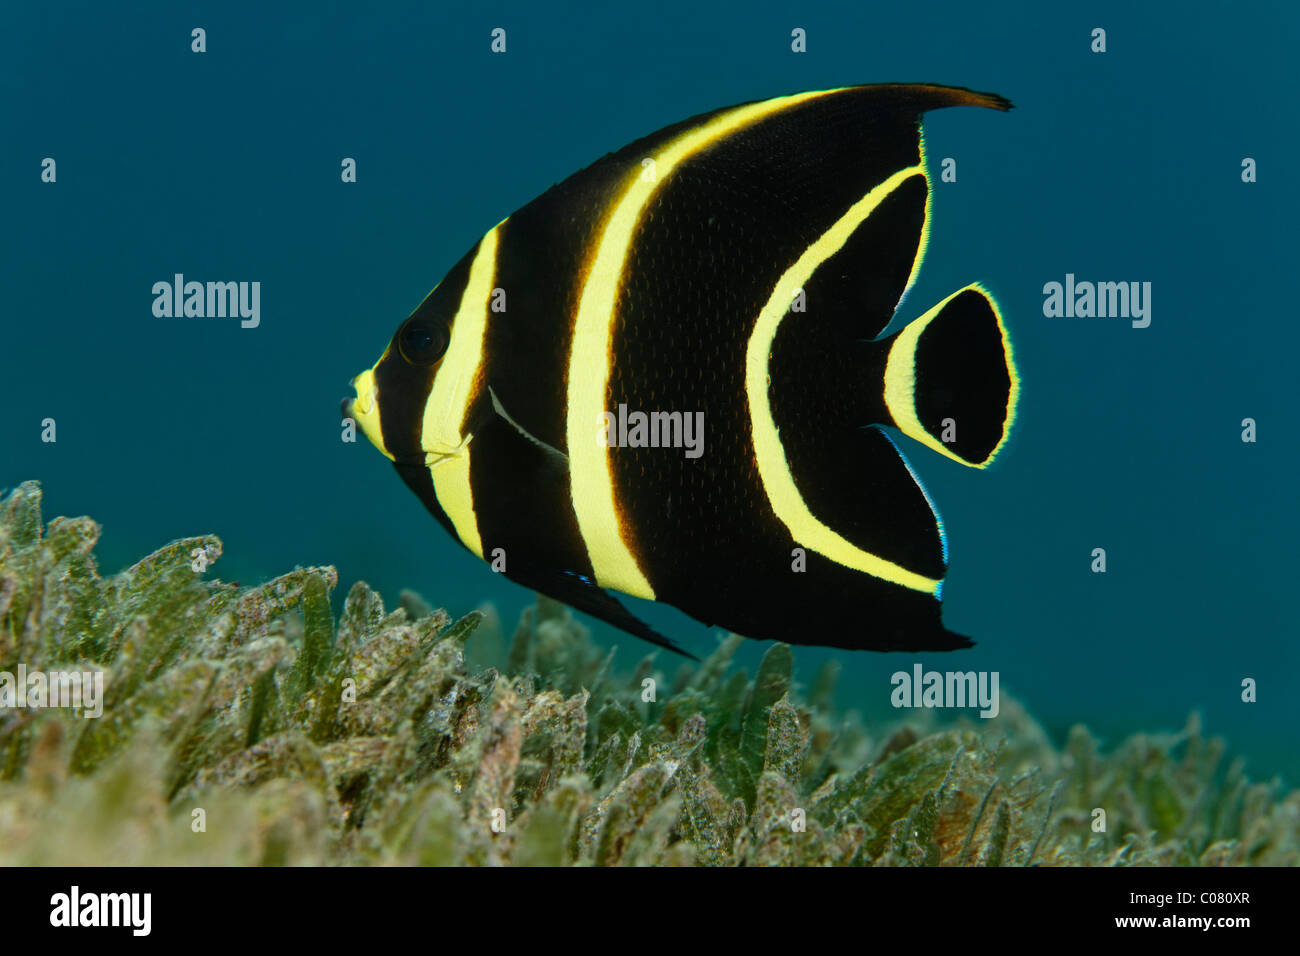 Angelfish Pomacanthus paru (français), forme juvénile, nage au-dessus des algues, Sainte-Lucie, l'île de Sainte-Lucie, îles du Vent Banque D'Images